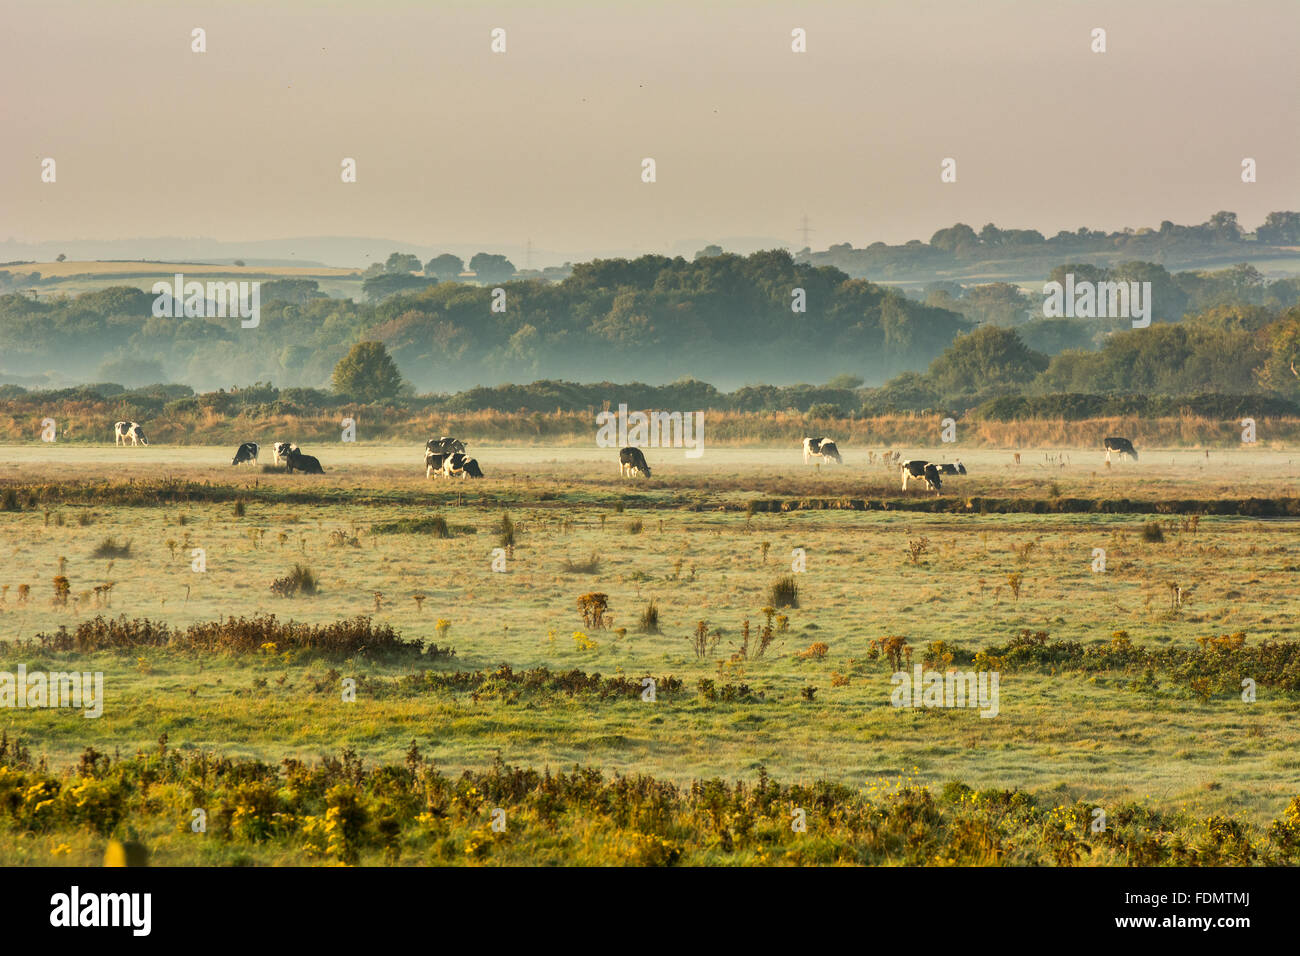 Cattle grazing on a misty green field in Ireland Stock Photo